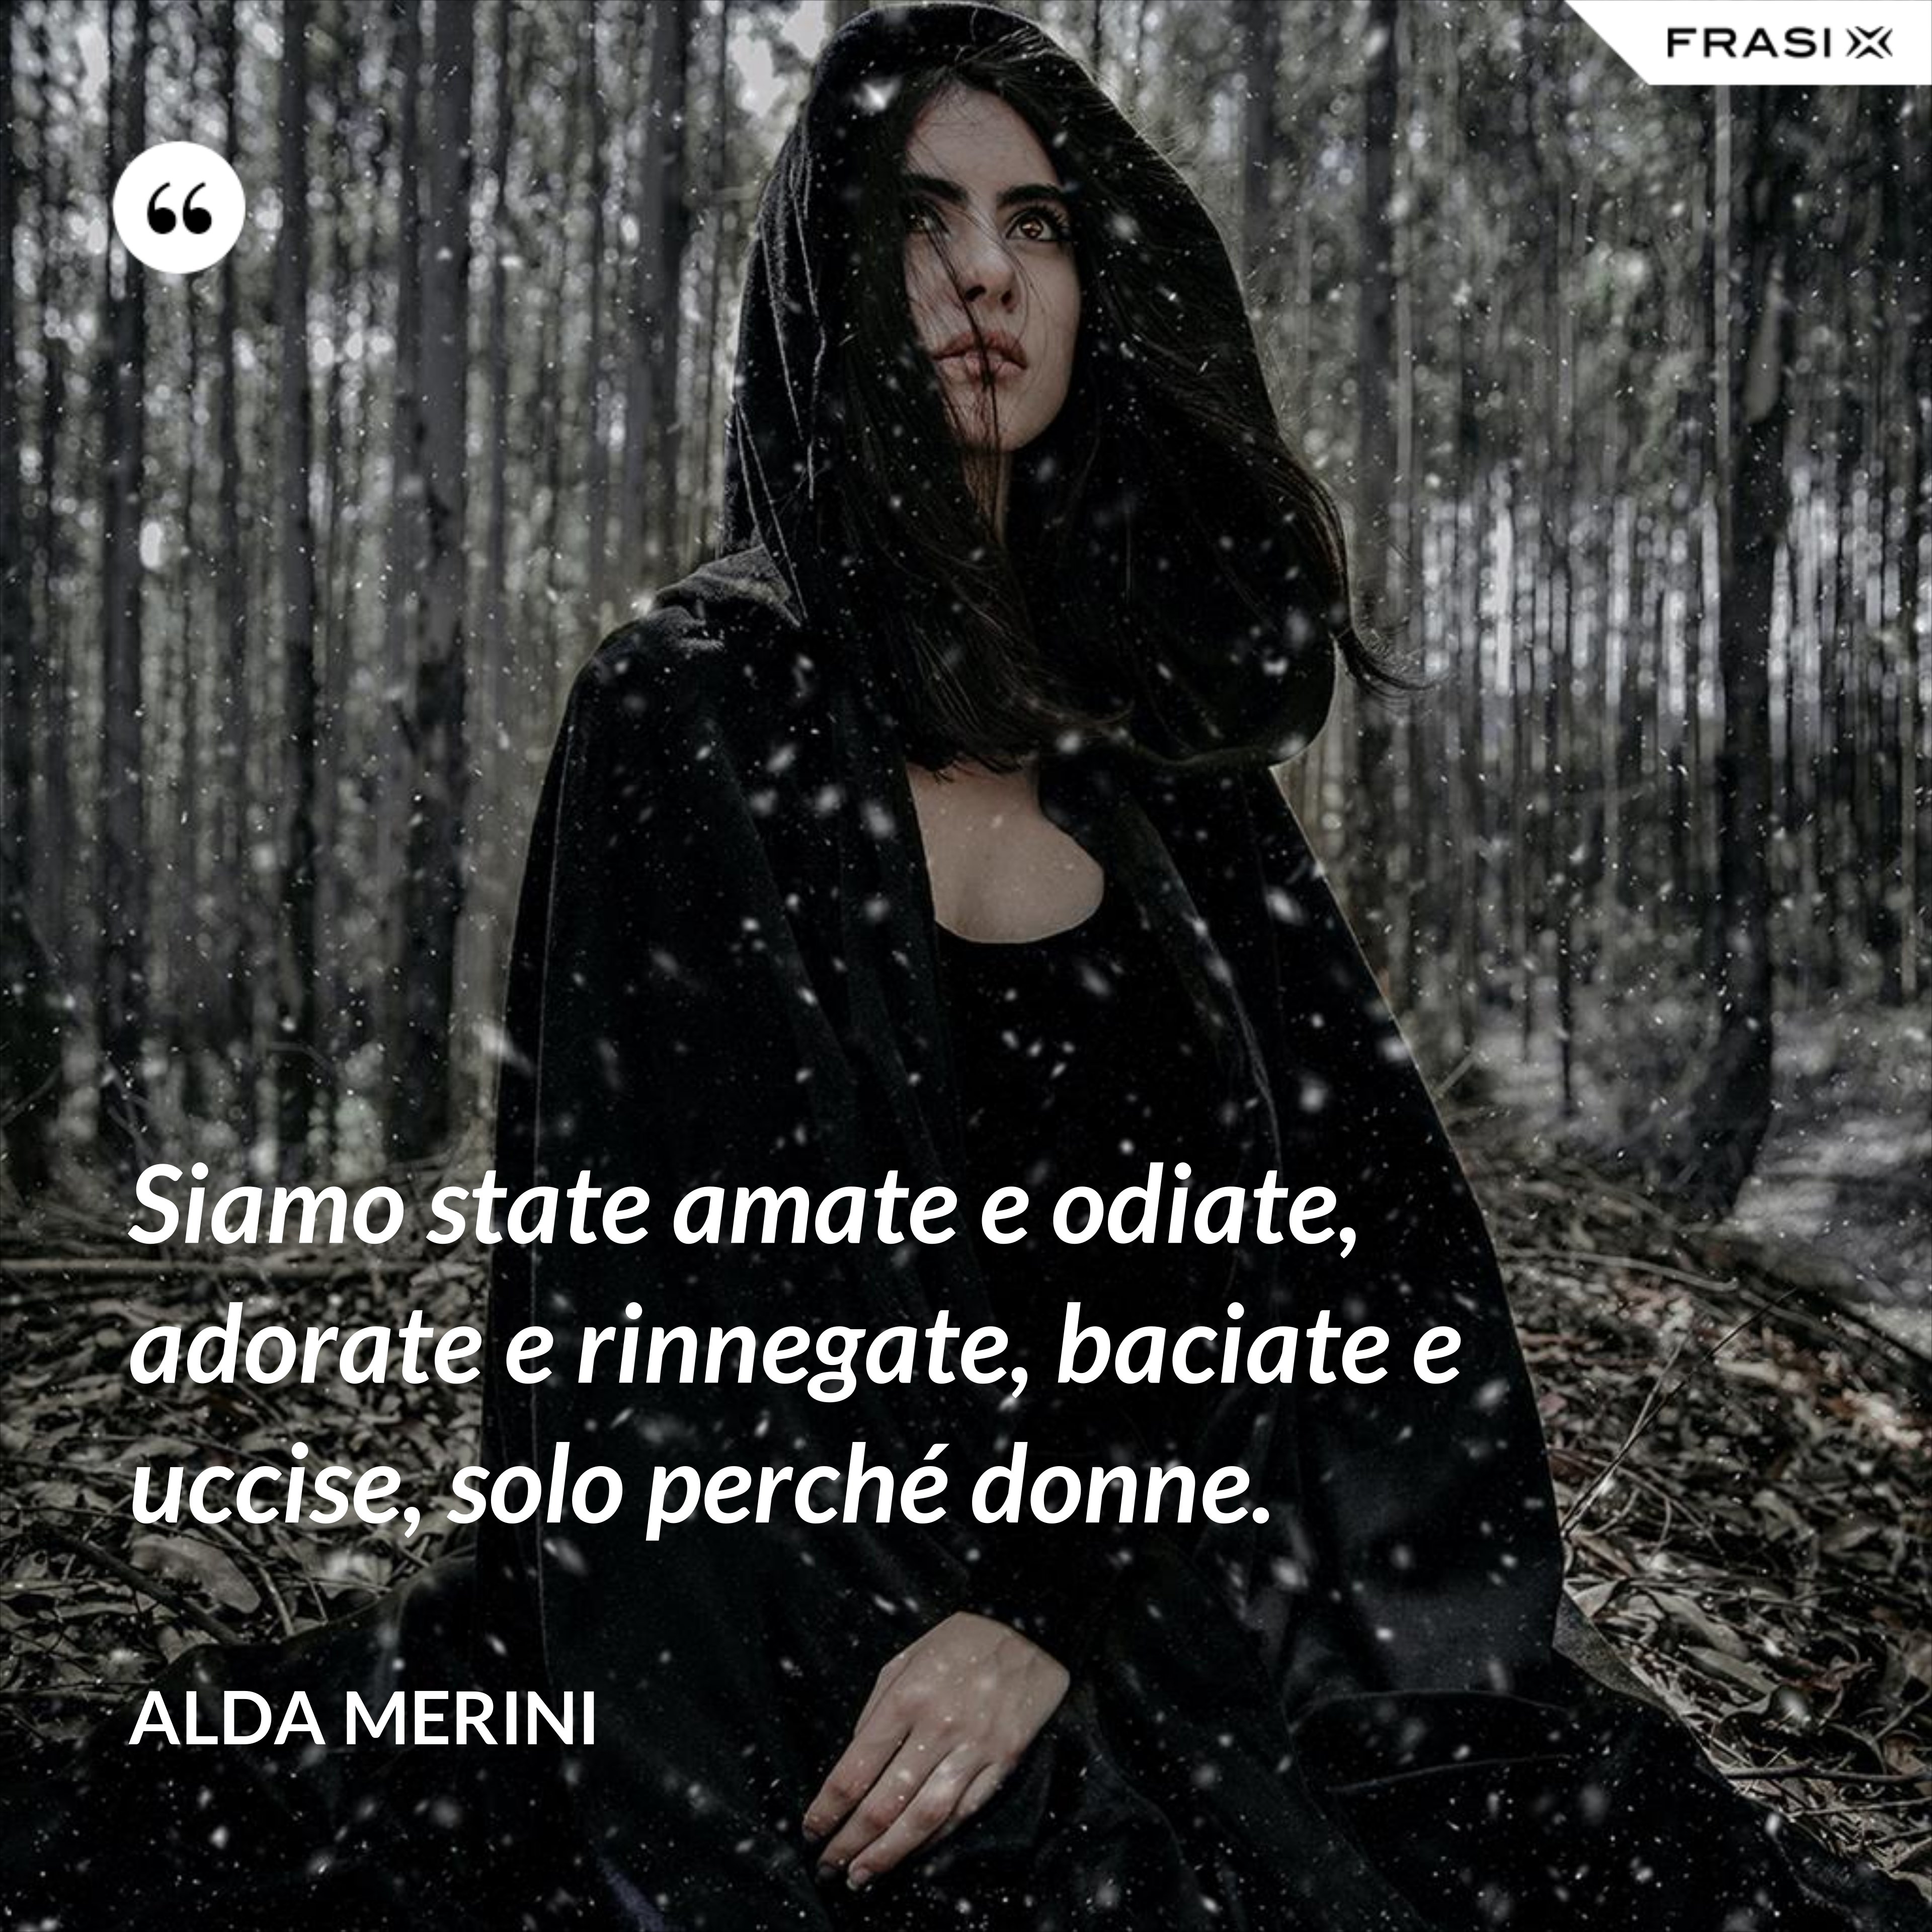 Siamo state amate e odiate, adorate e rinnegate, baciate e uccise, solo perché donne. - Alda Merini